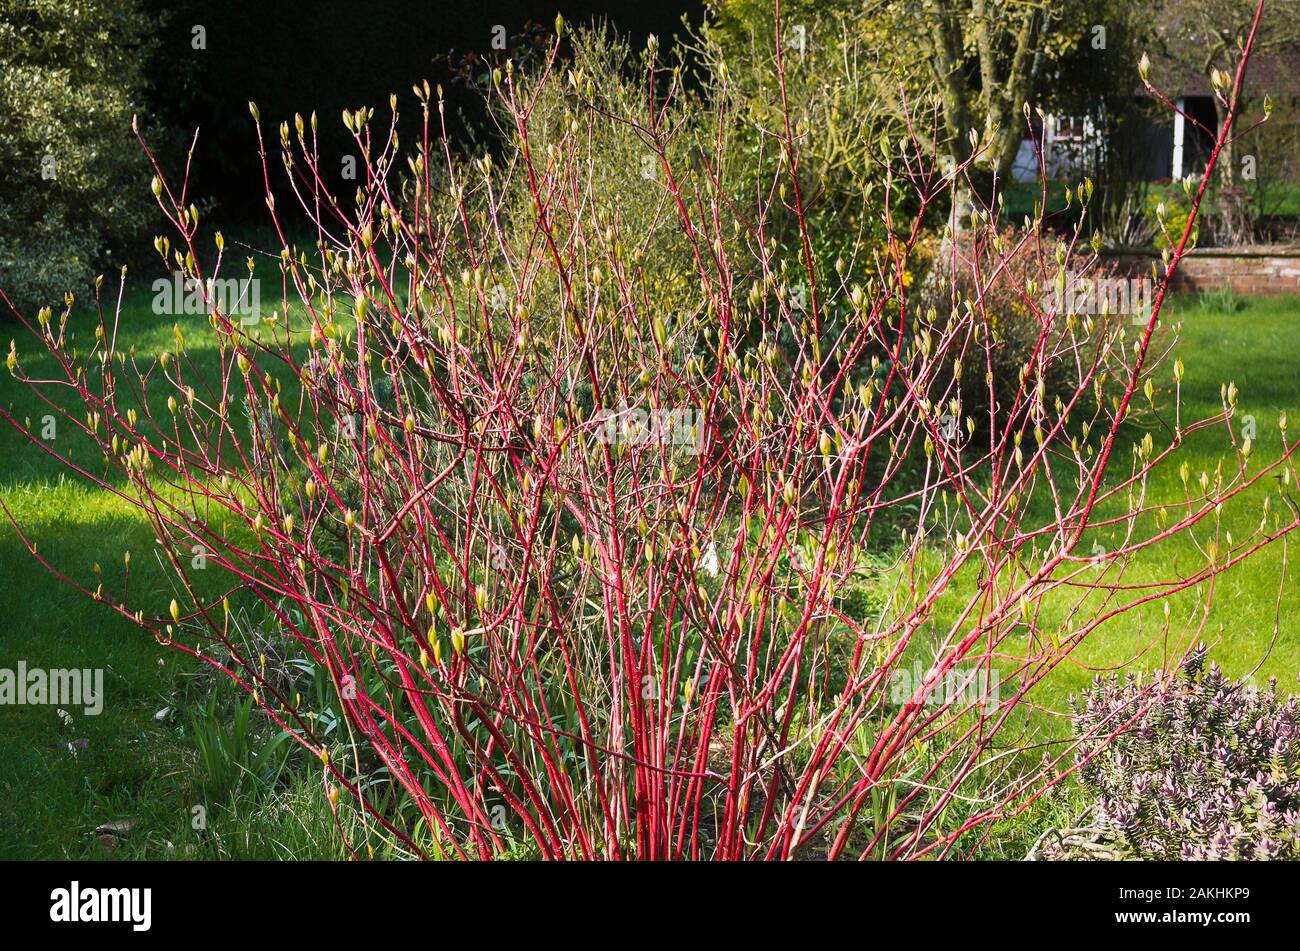 Un caducifolio cornus alba Sibirica Westonbirt mostrando sus tallos de color rojo brillante durante el invierno, cuando hay pocos colores naturales en un jardín inglés Foto de stock